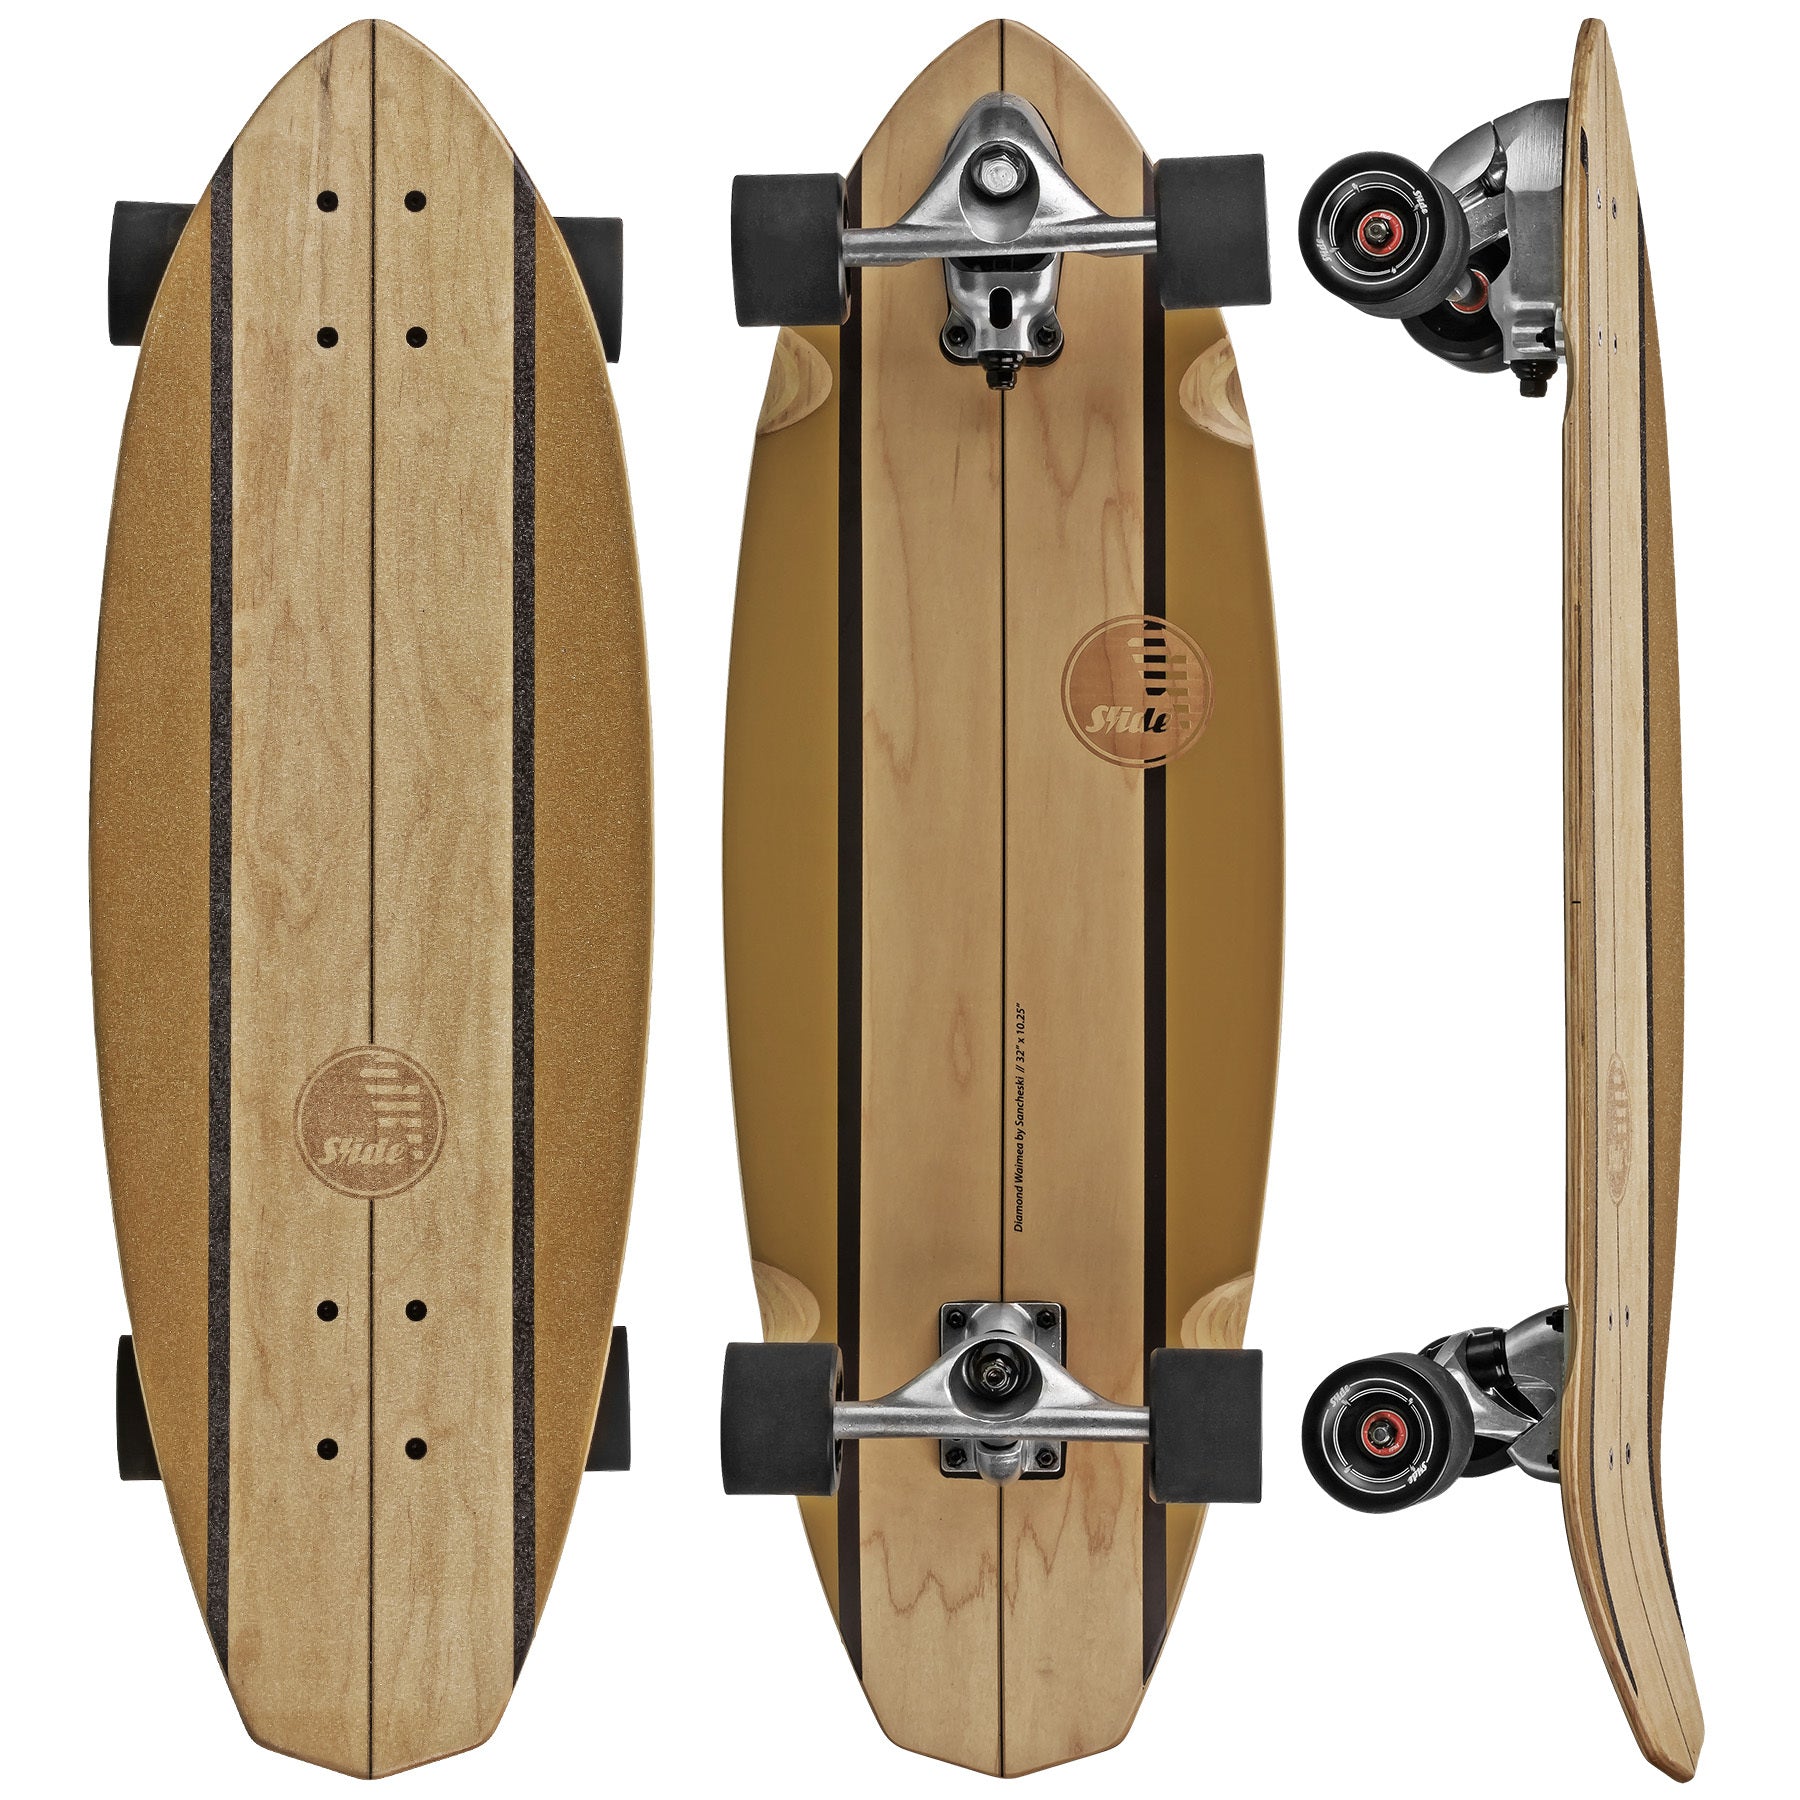 日本直販オンライン SLIDE SurfSkateboards size33 Nose スケート